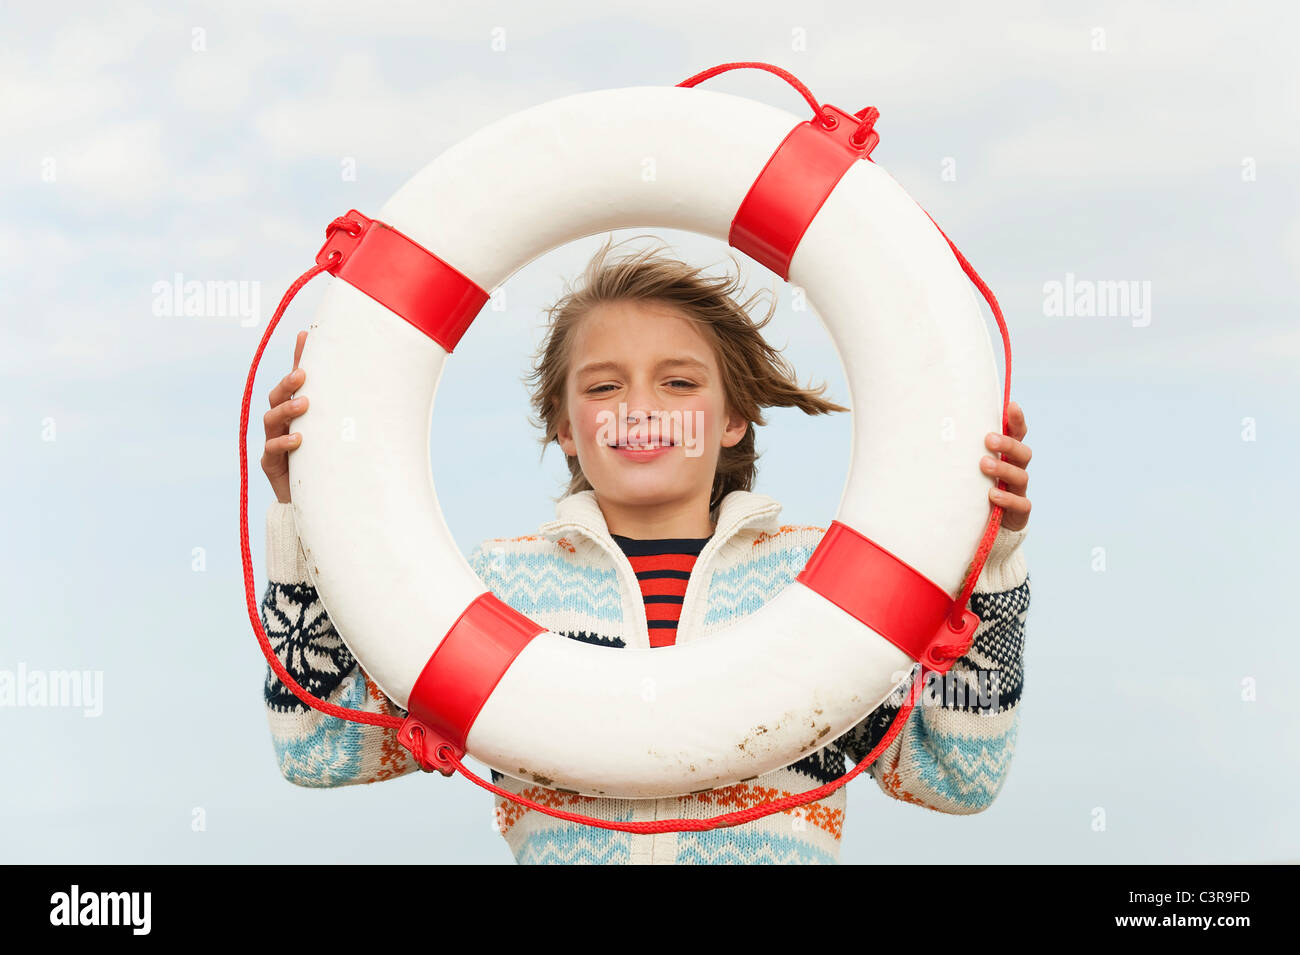 Germania, Mare del Nord, St.Peter-Ording, ragazzo (8-9) azienda life saver a beach, sorridente, ritratto Foto Stock